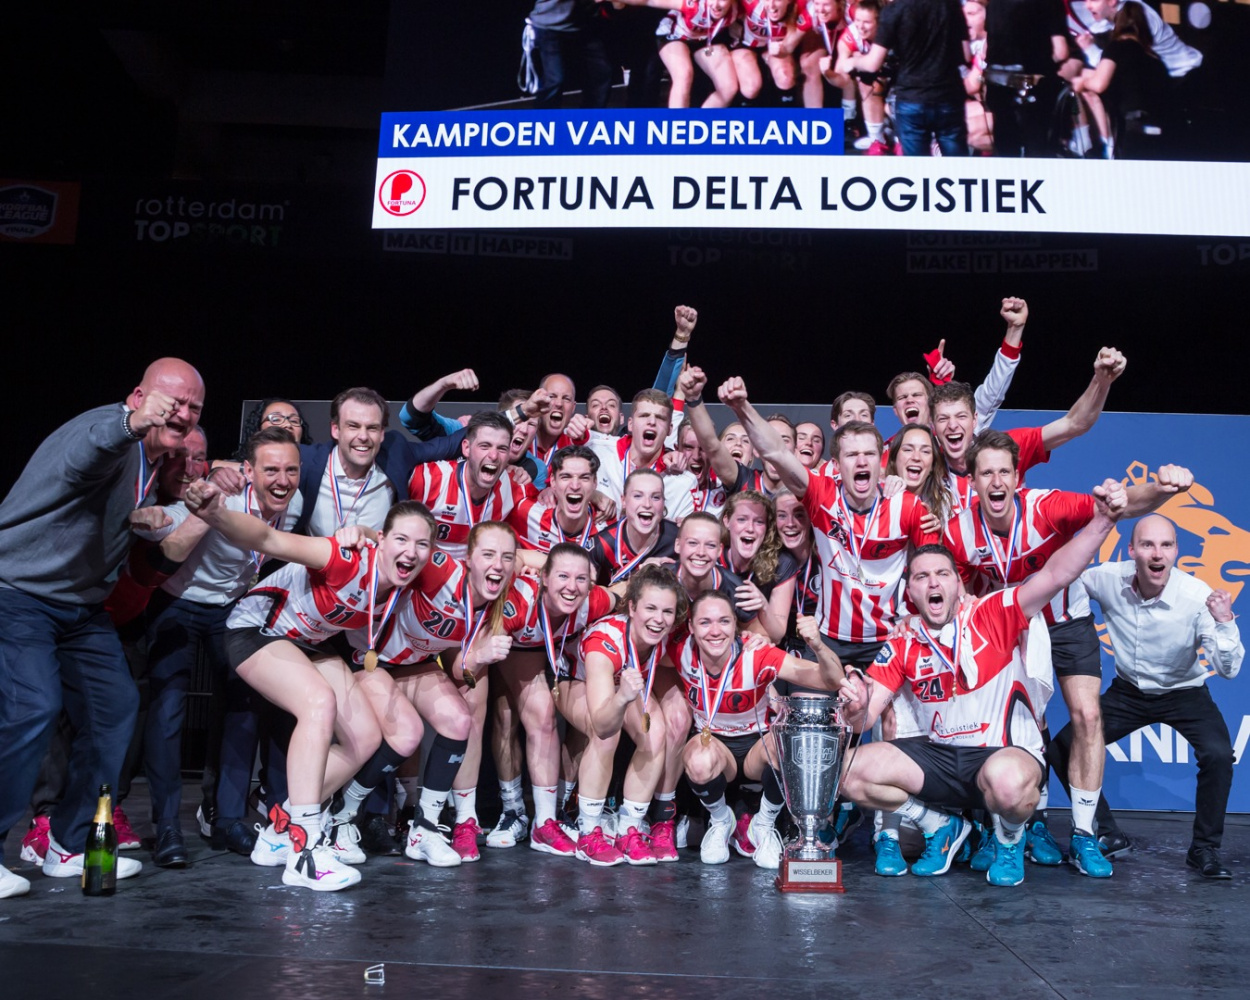 Korfbal League: Fortuna/Delta Logistiek is Kampioen van Nederland!